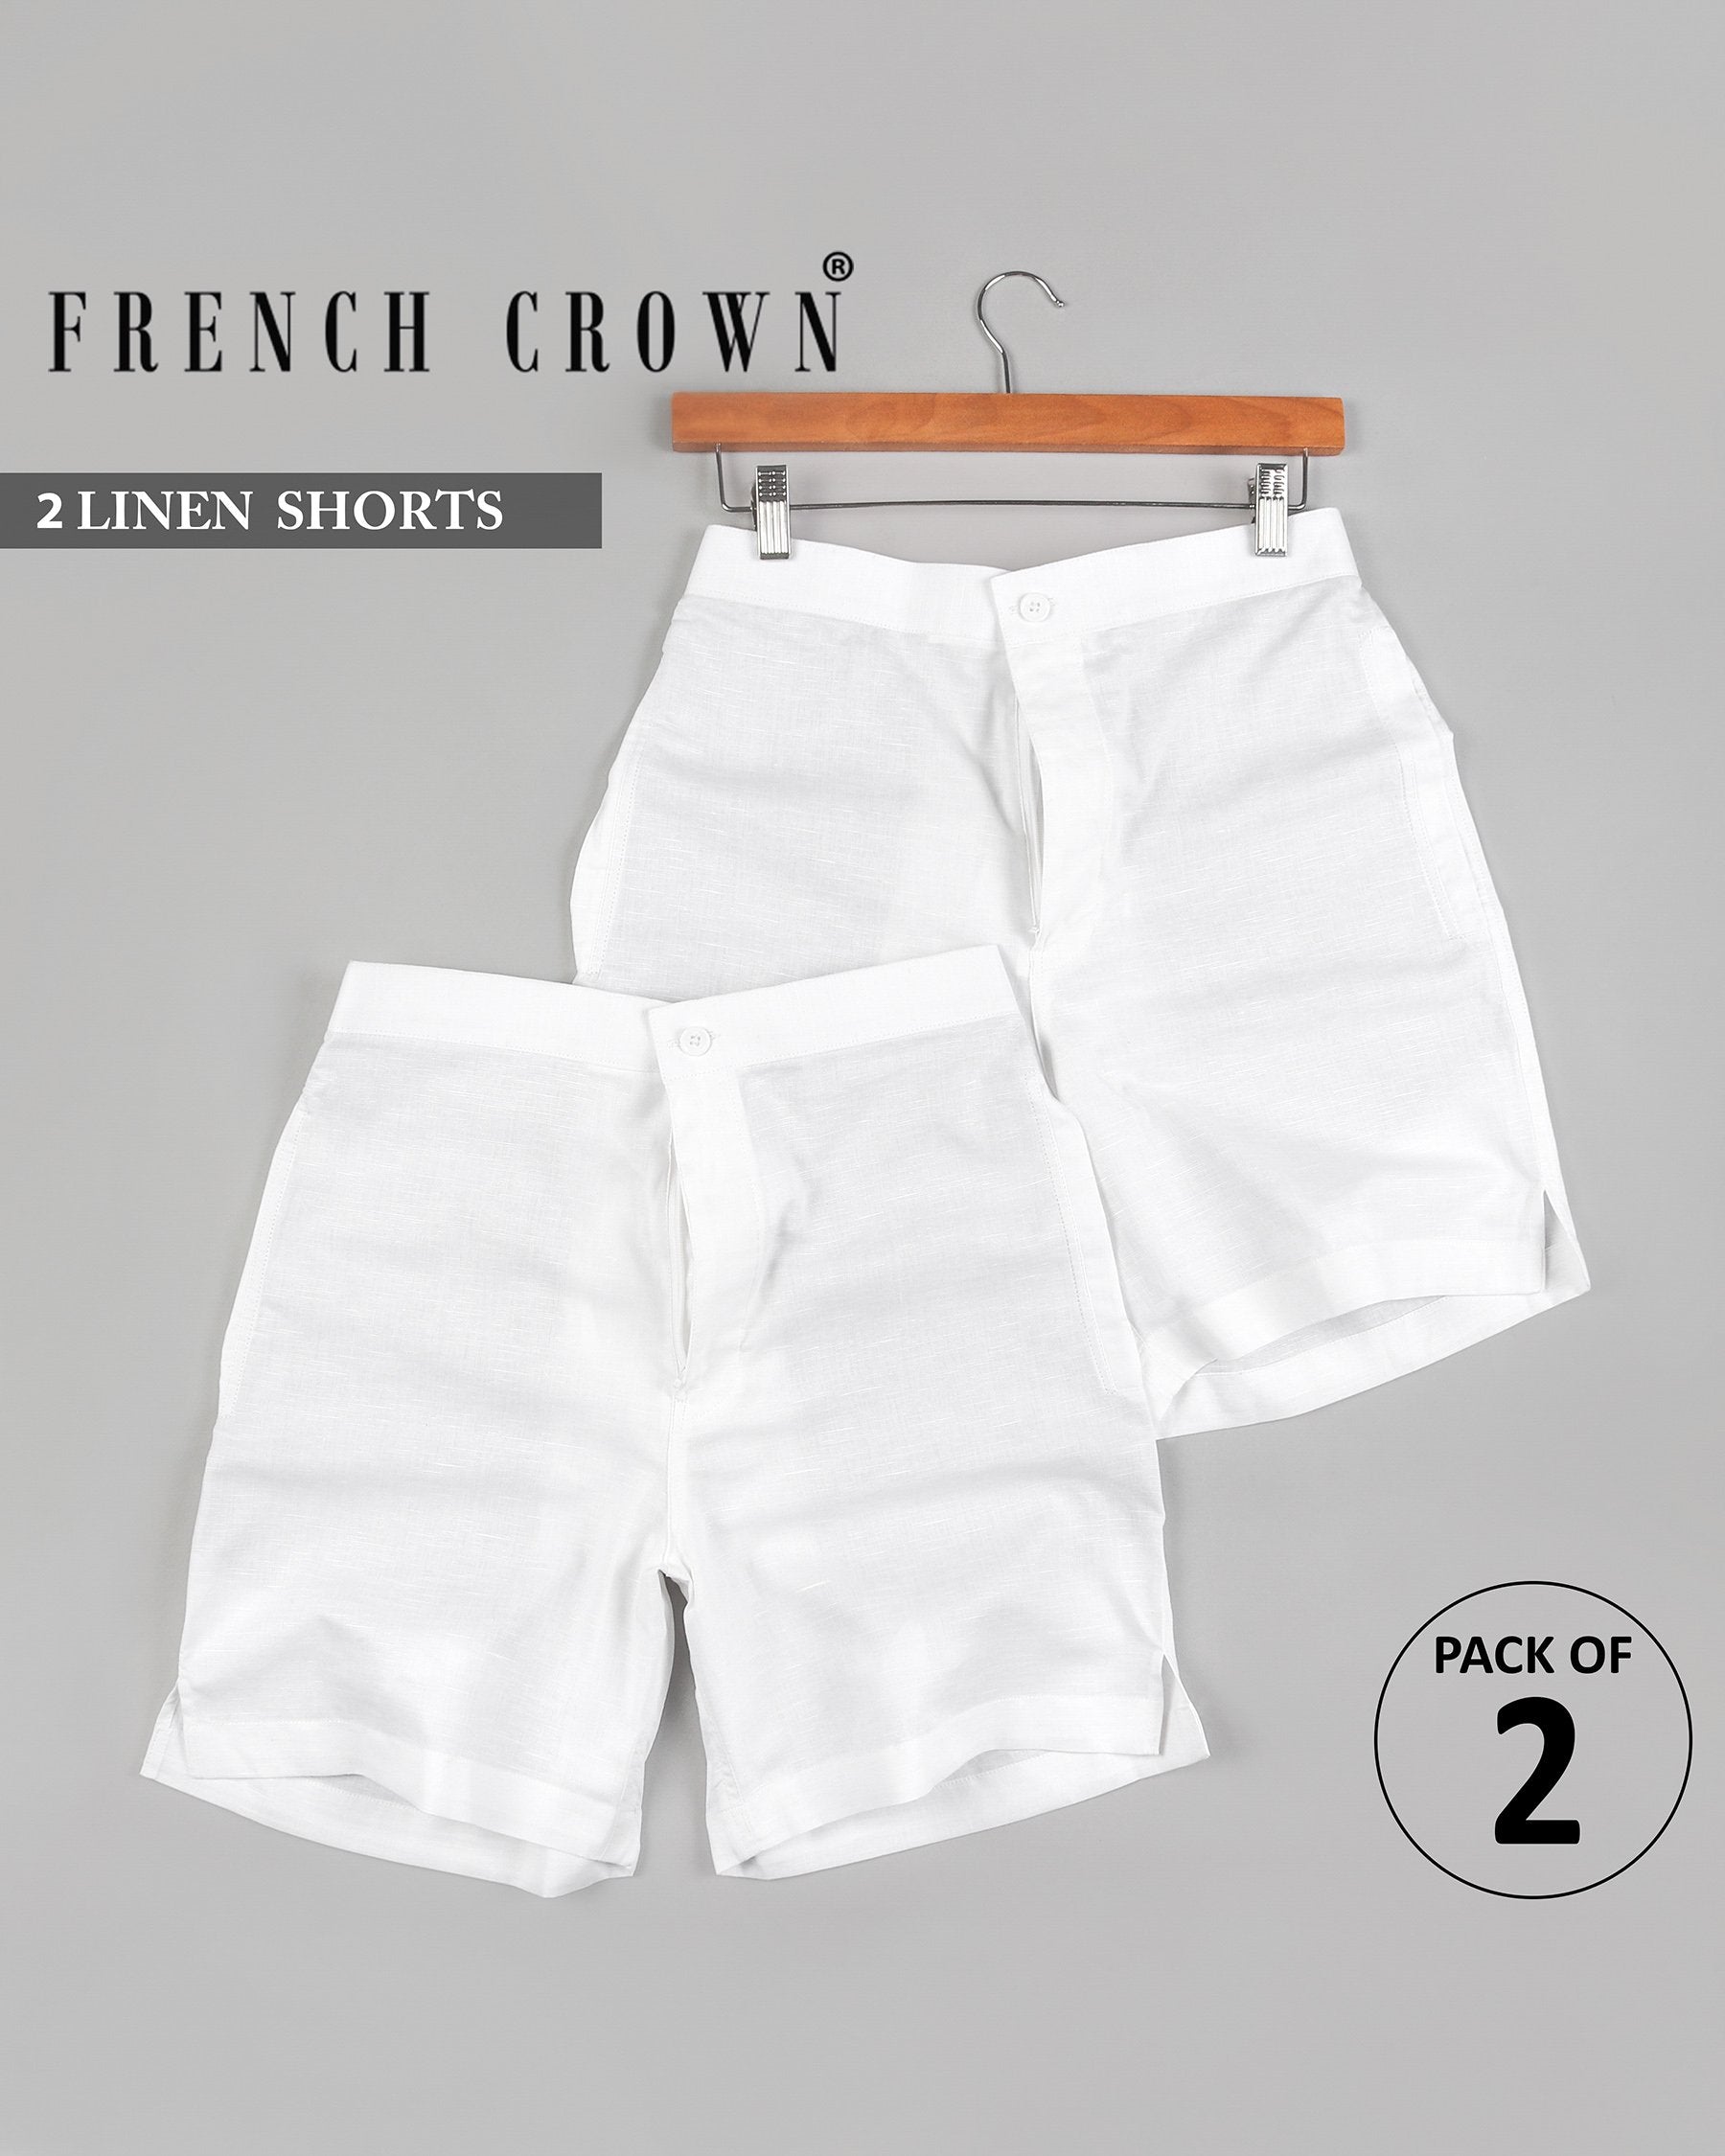 Two Bright White Premium Linen Shorts SR07-38, SR07-42, SR07-28, SR07-36, SR07-32, SR07-30, SR07-40, SR07-34, SR07-44